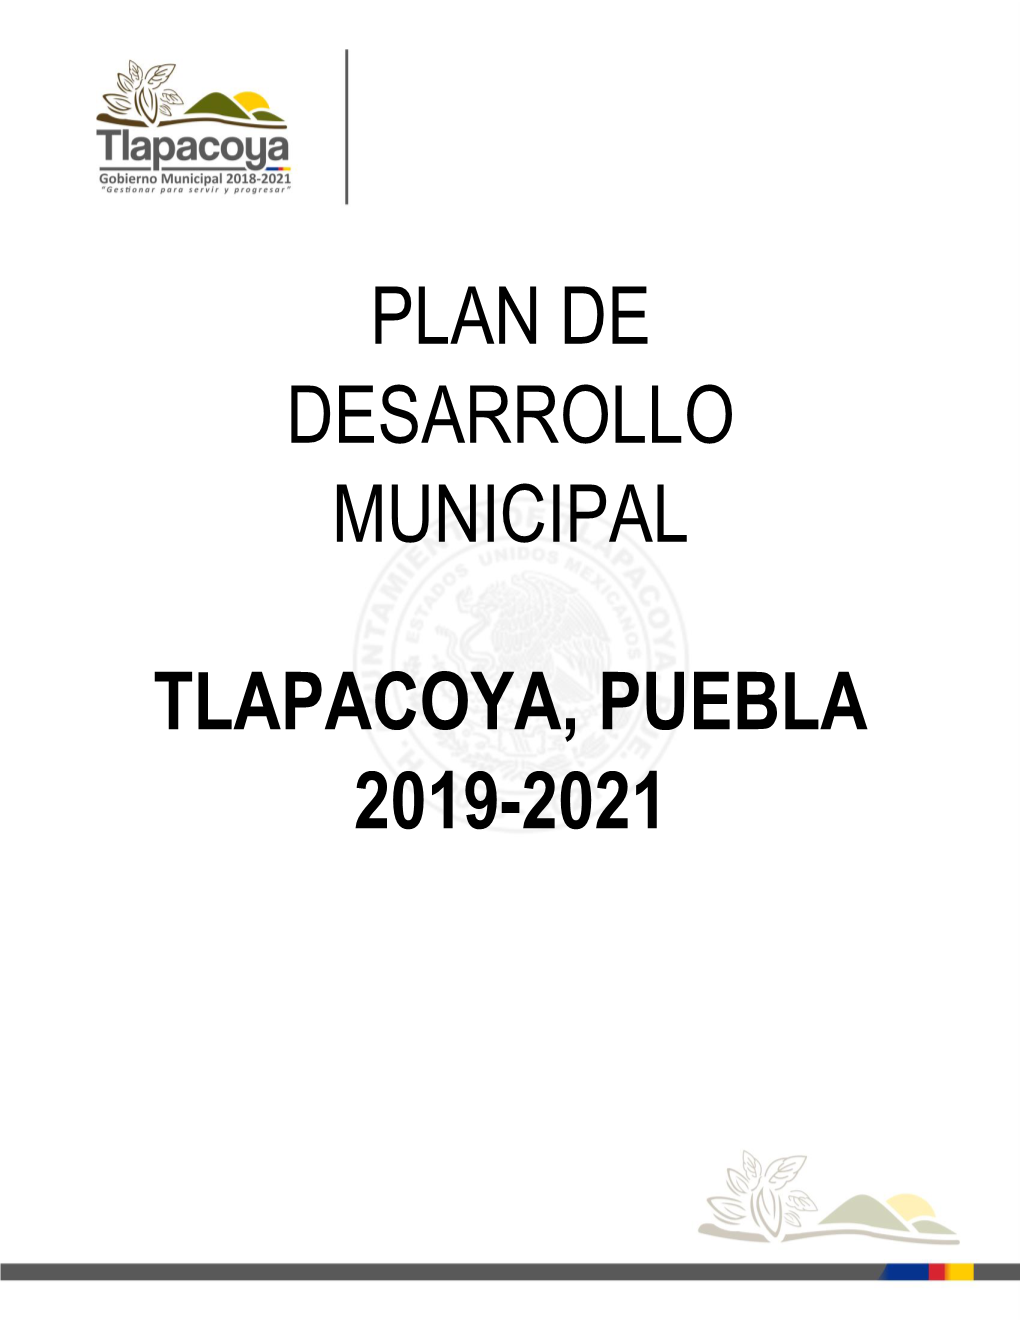 Plan De Desarrollo Municipal Tlapacoya, Puebla 2019-2021